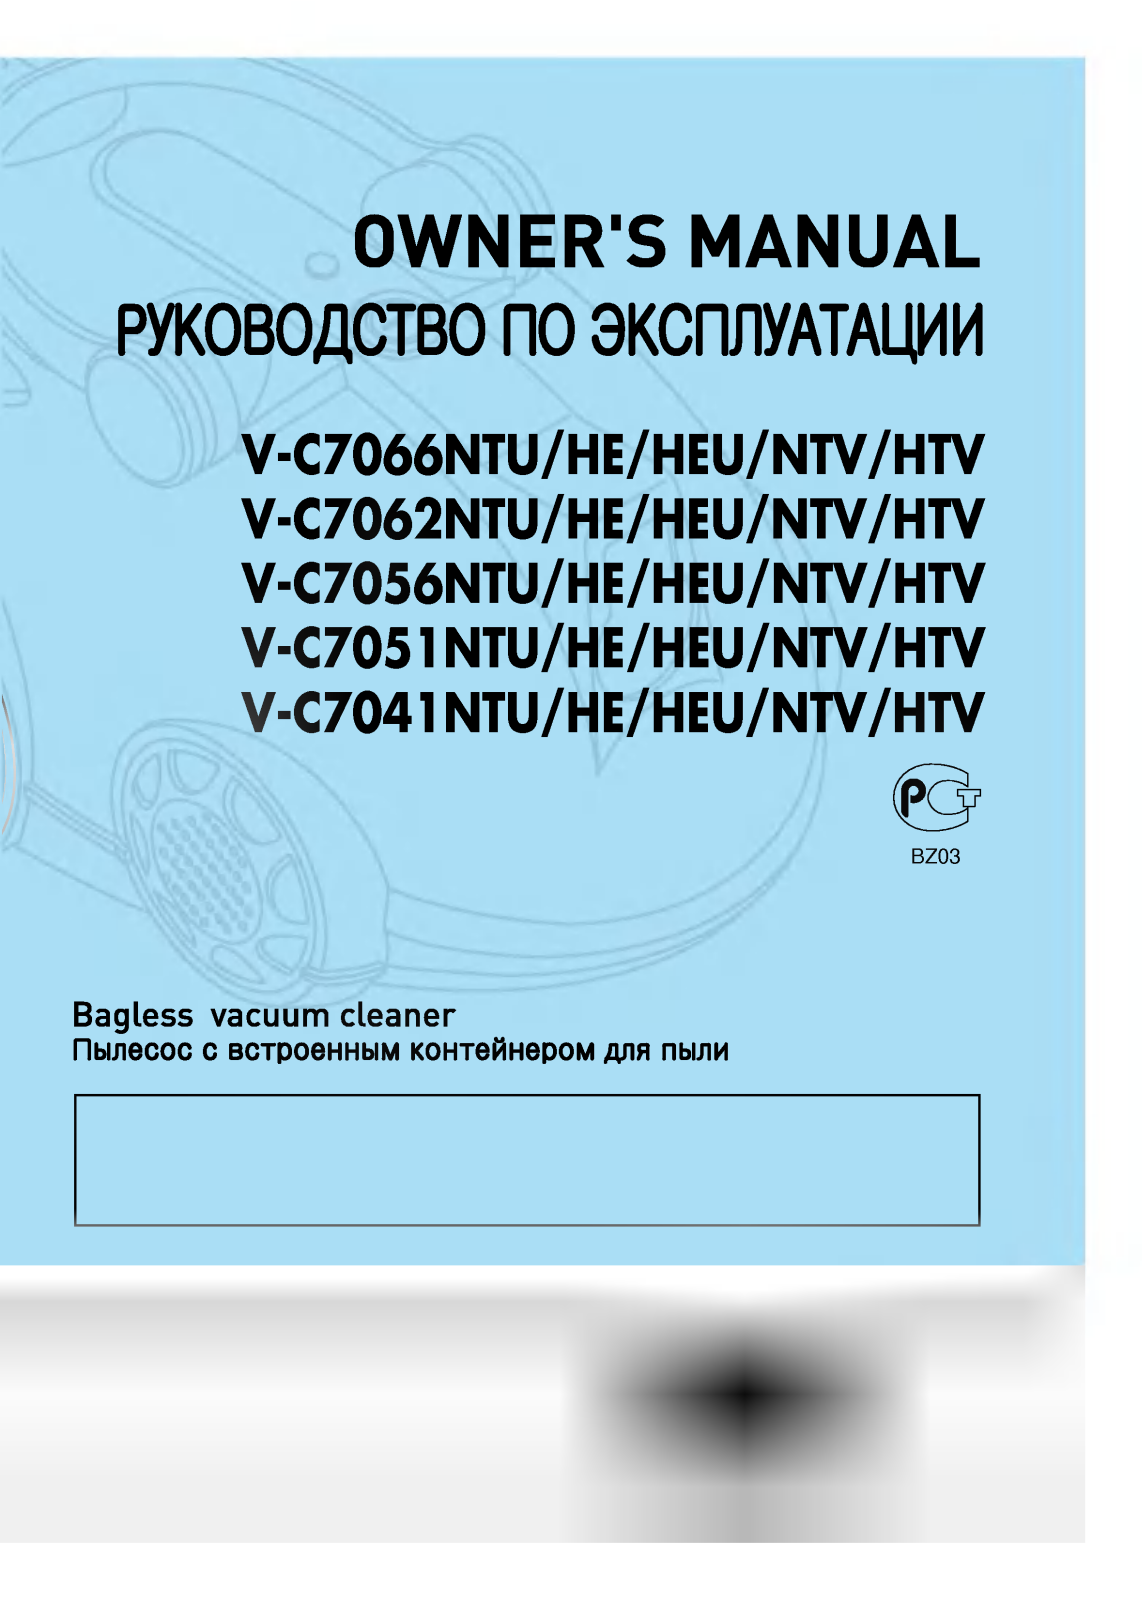 LG V-C7041HE, V-C7041NTU, V-C7051HE, V-C7051NTU, V-C7056HE User manual